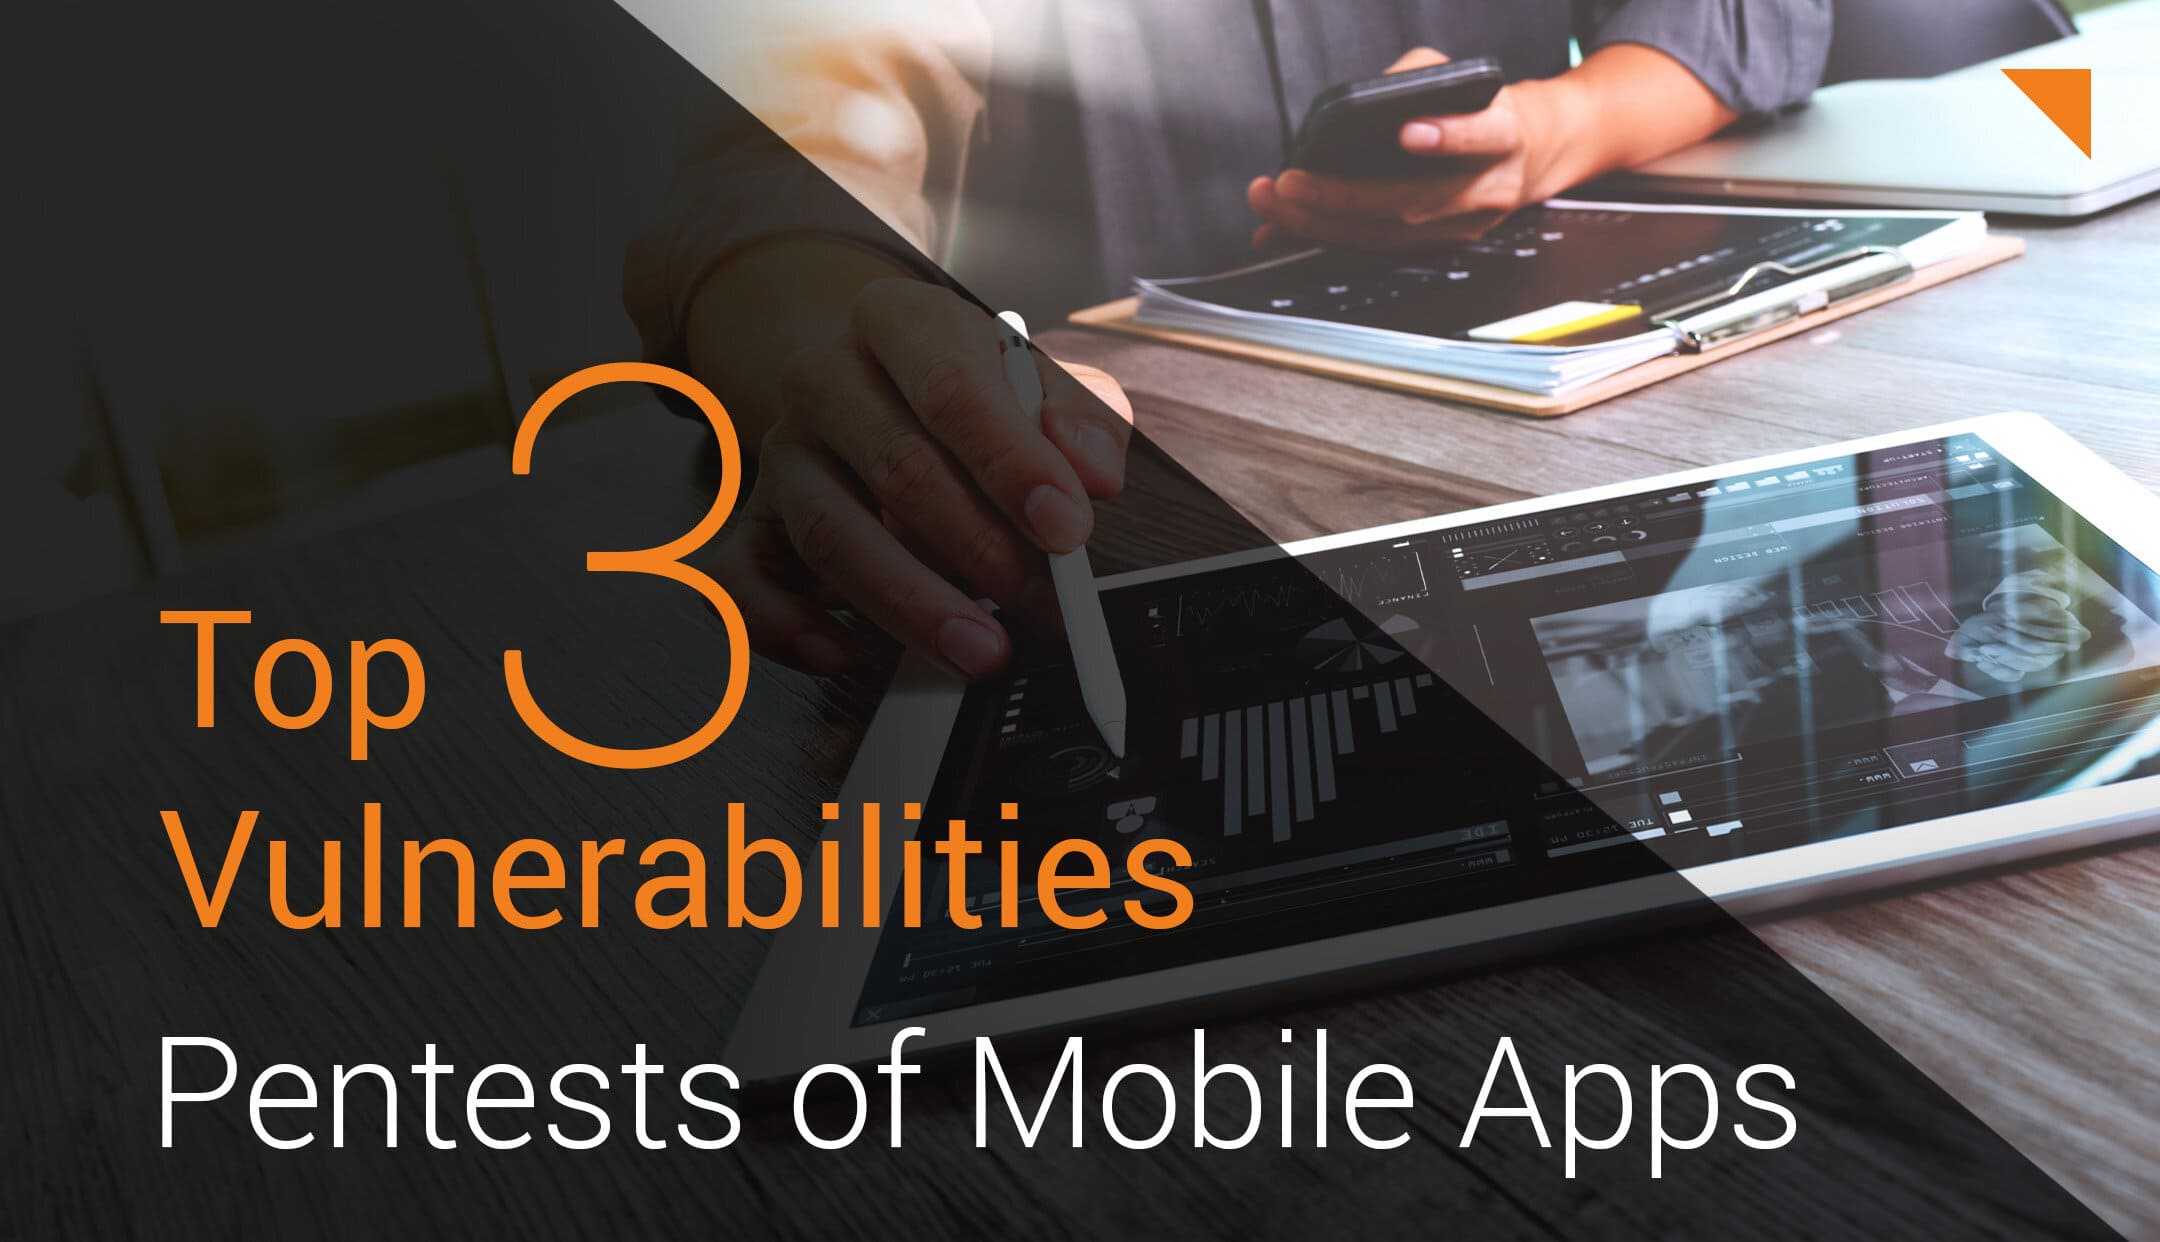 Top 3 Vulnerabilities in Mobile App Pentests